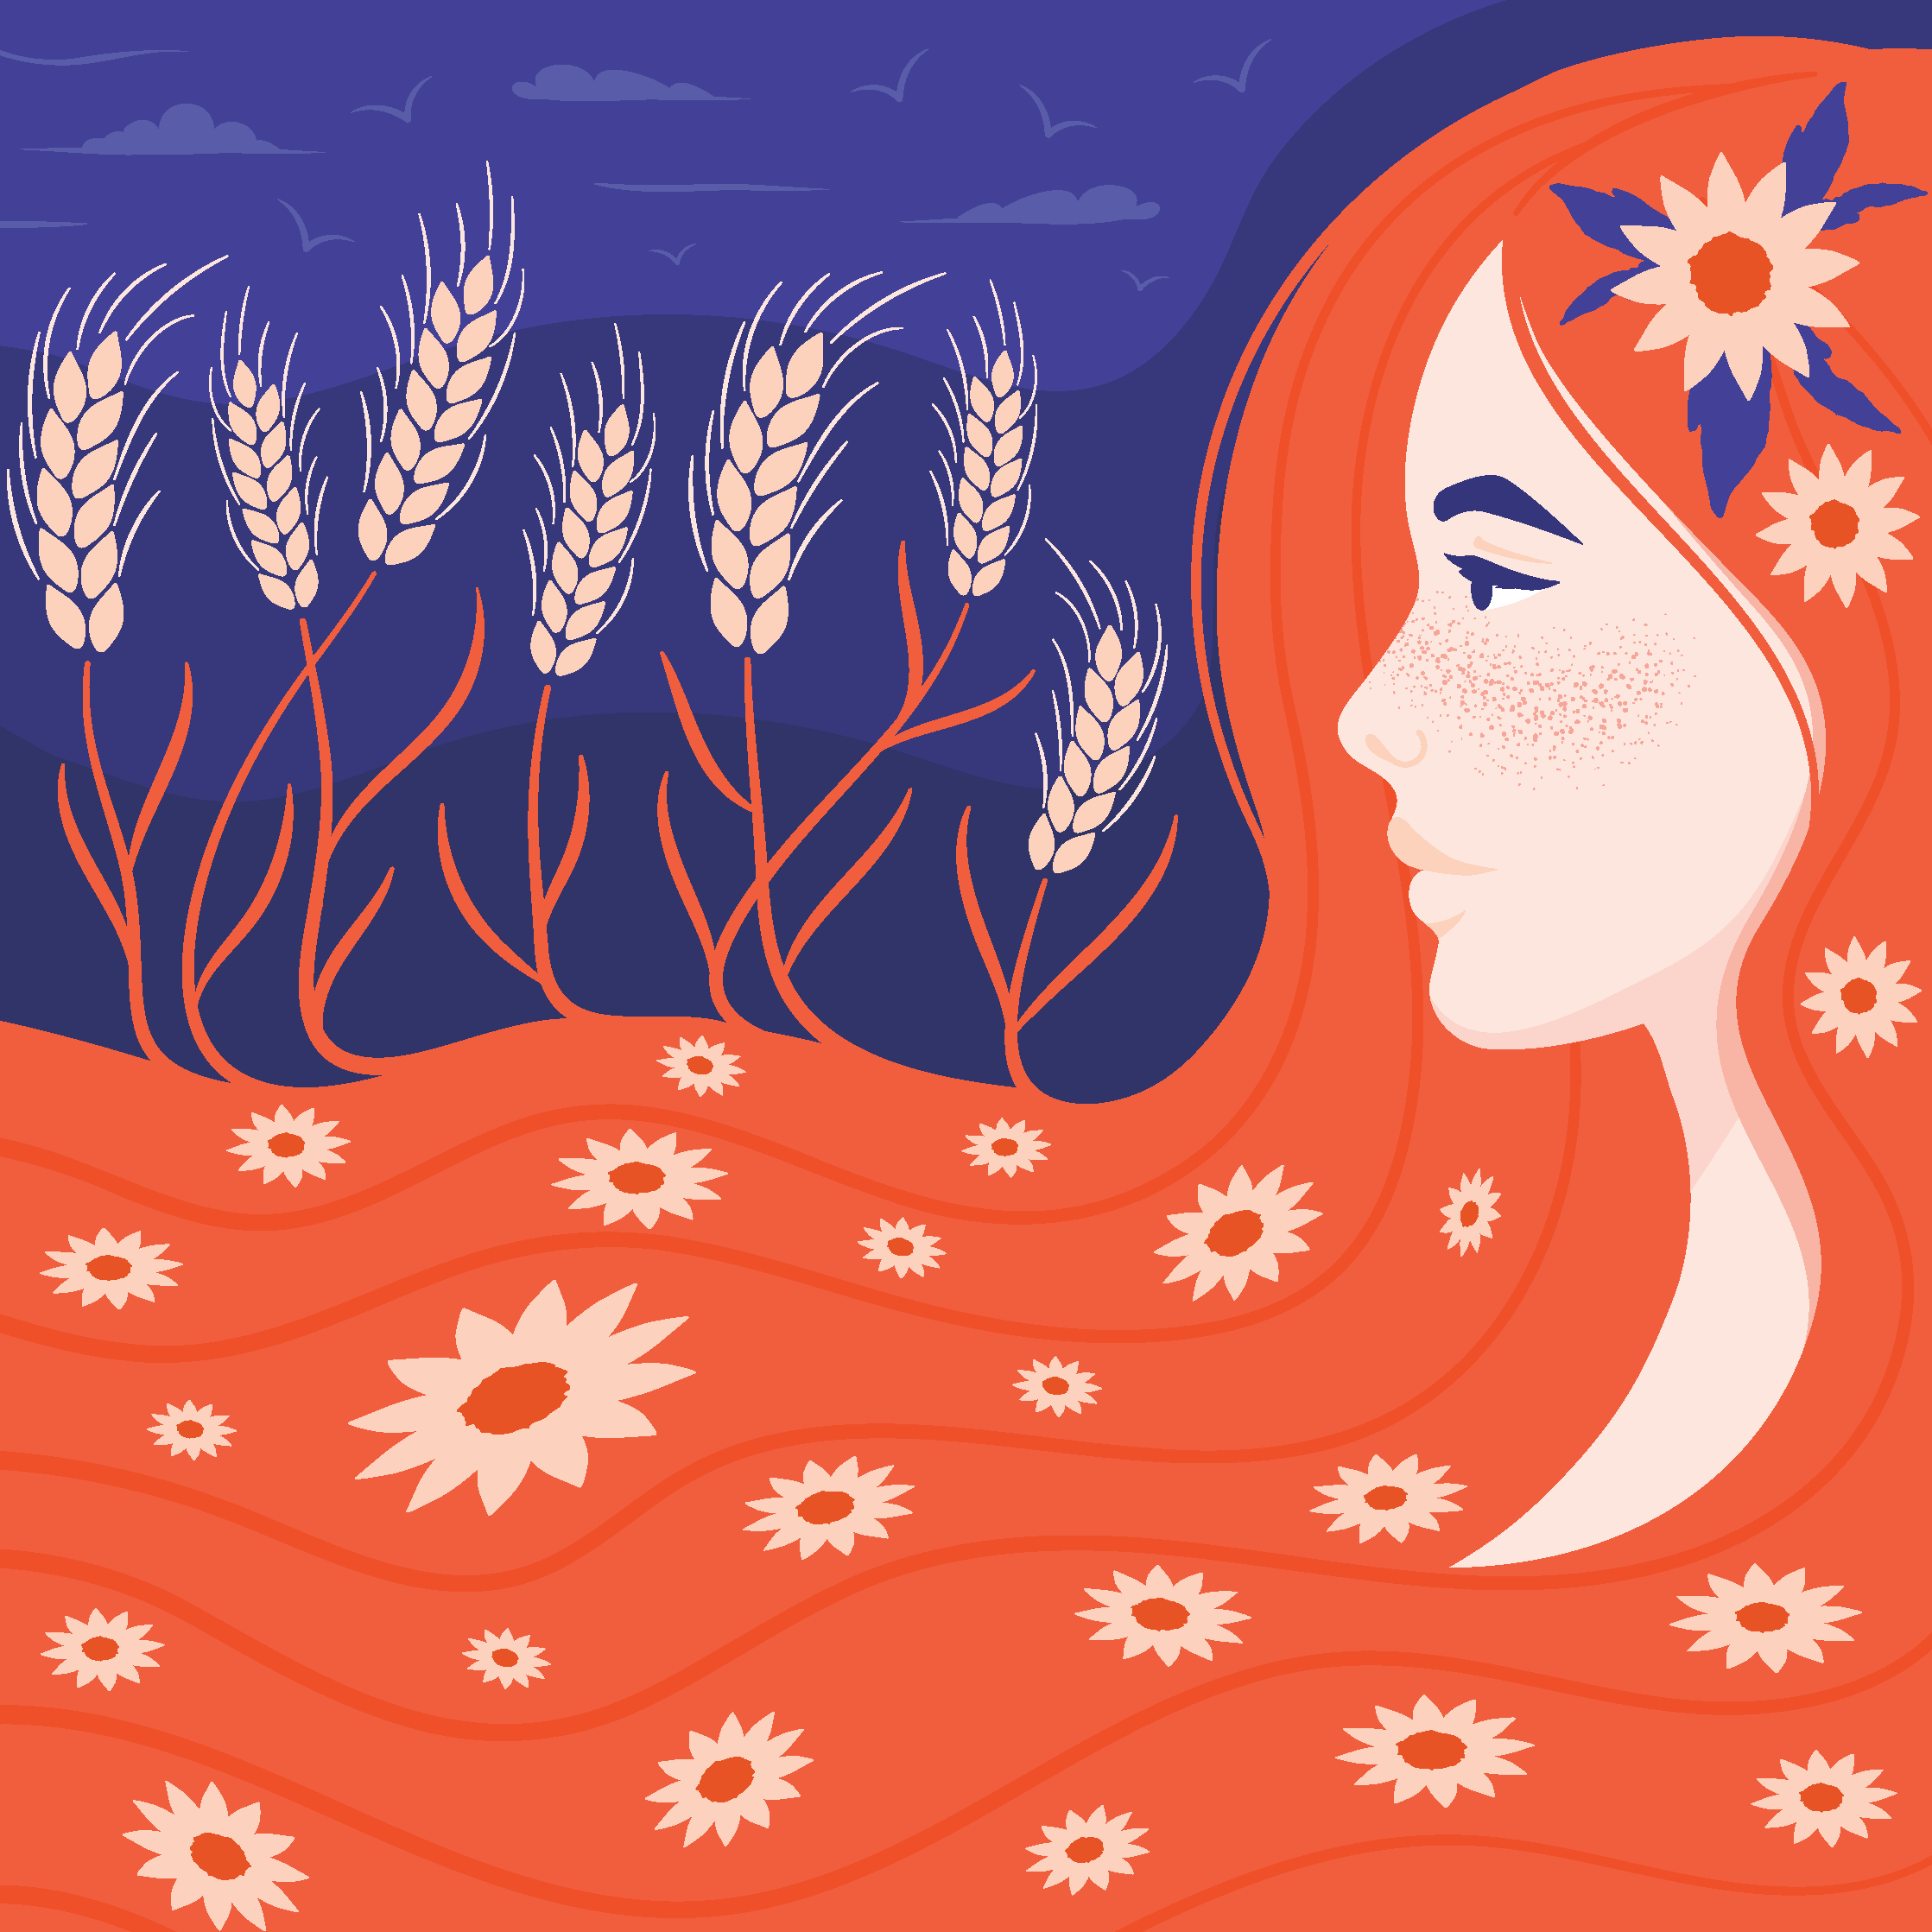 Demeter Greek Goddess Redheaded Illustration by Elivera Designs 